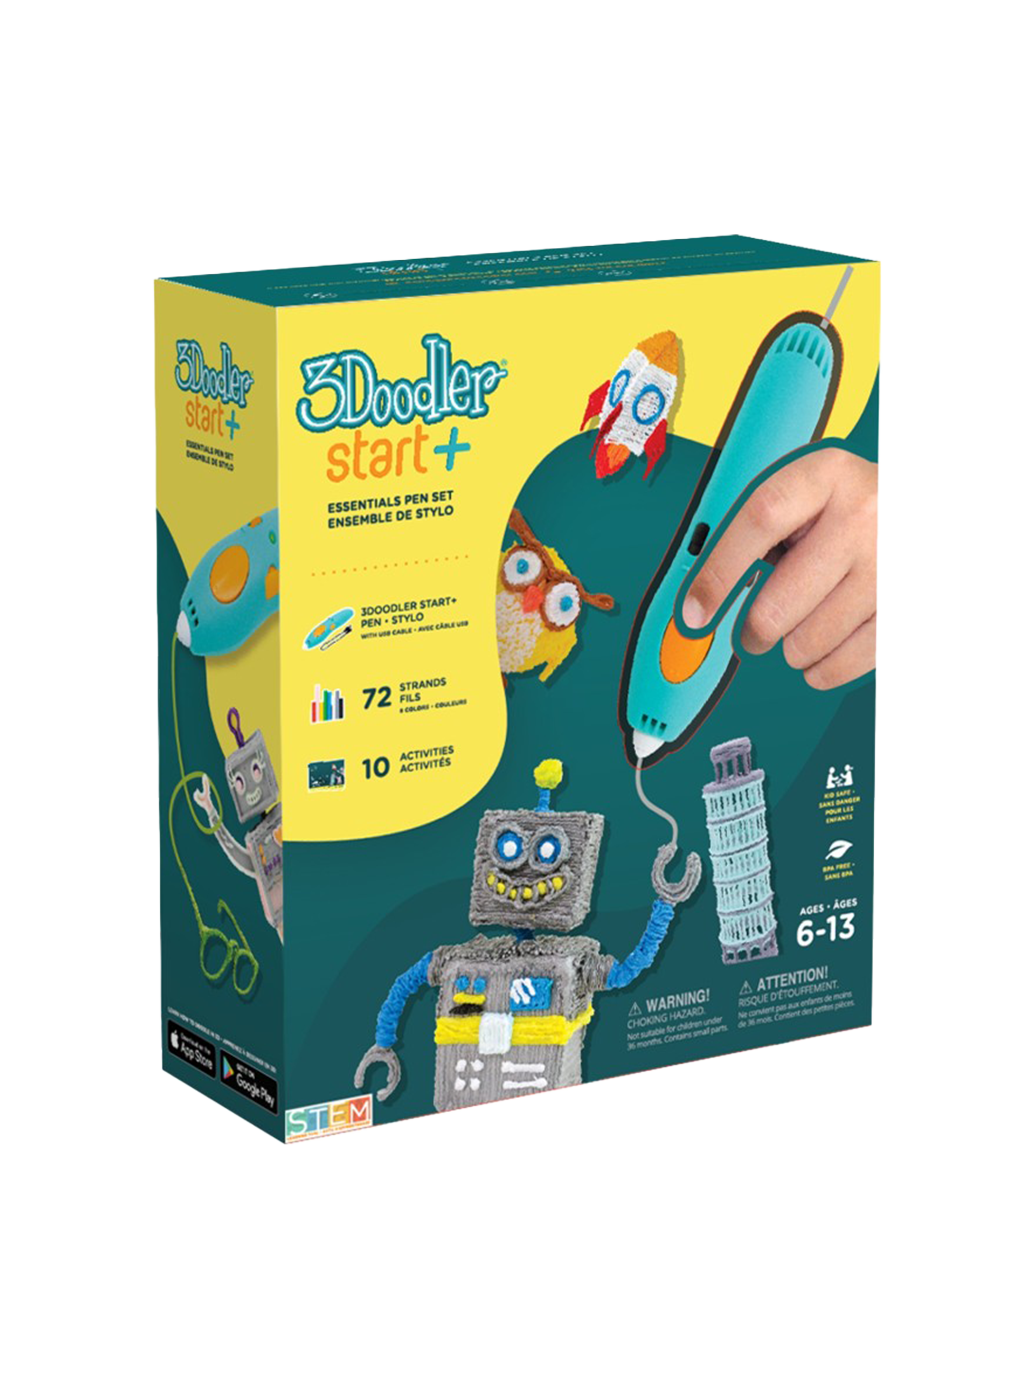 3Doodler Start+ pen for kids